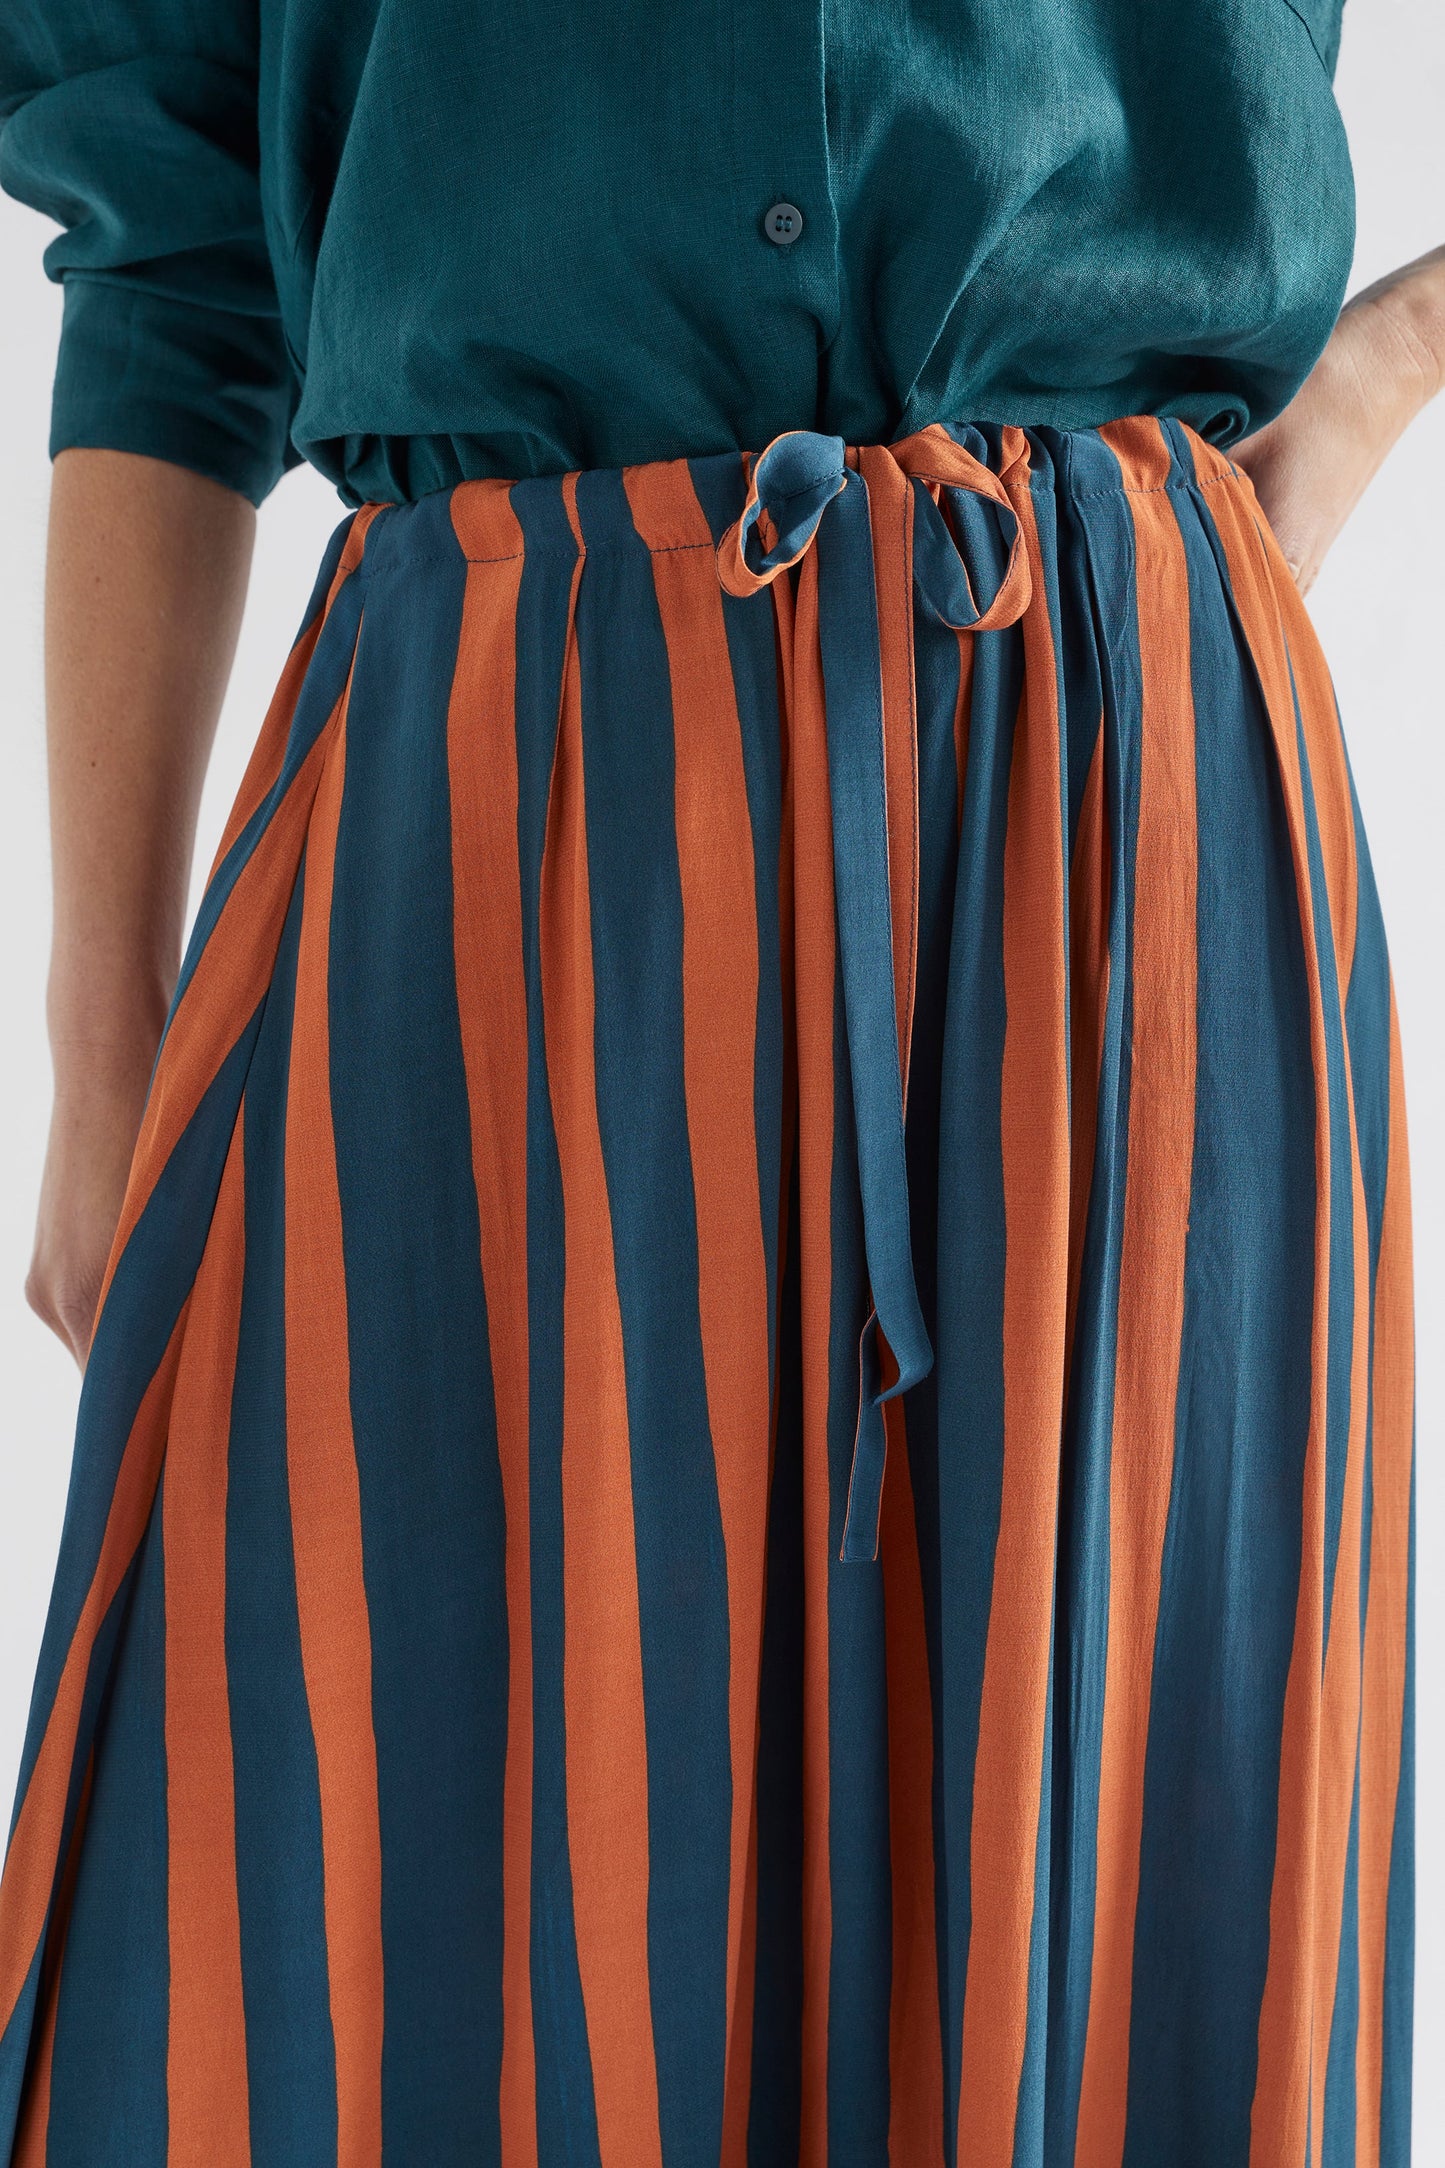 Tilbe Stripe Midi-Aline Drawstring Skirt Model Front detail | BRONZE TEAL PAINT STRIPE